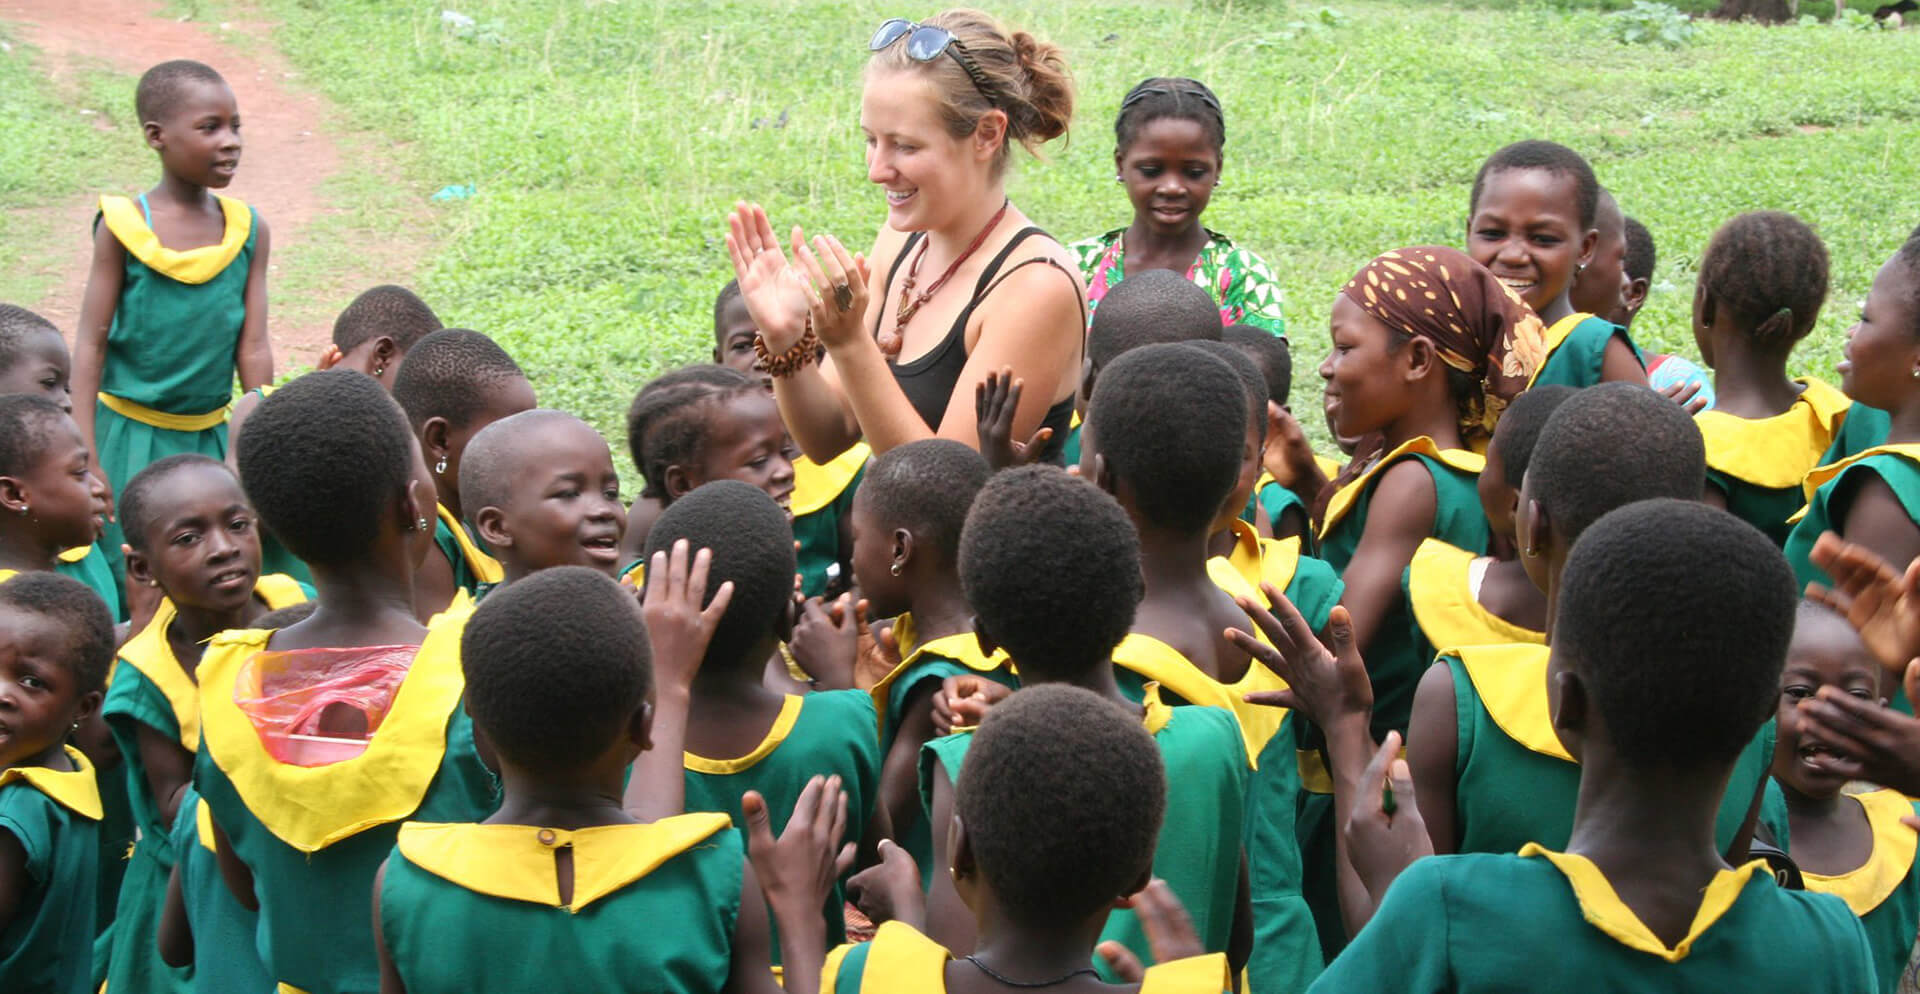 Meet Amy Elizabeth, Volunteer in Ghana